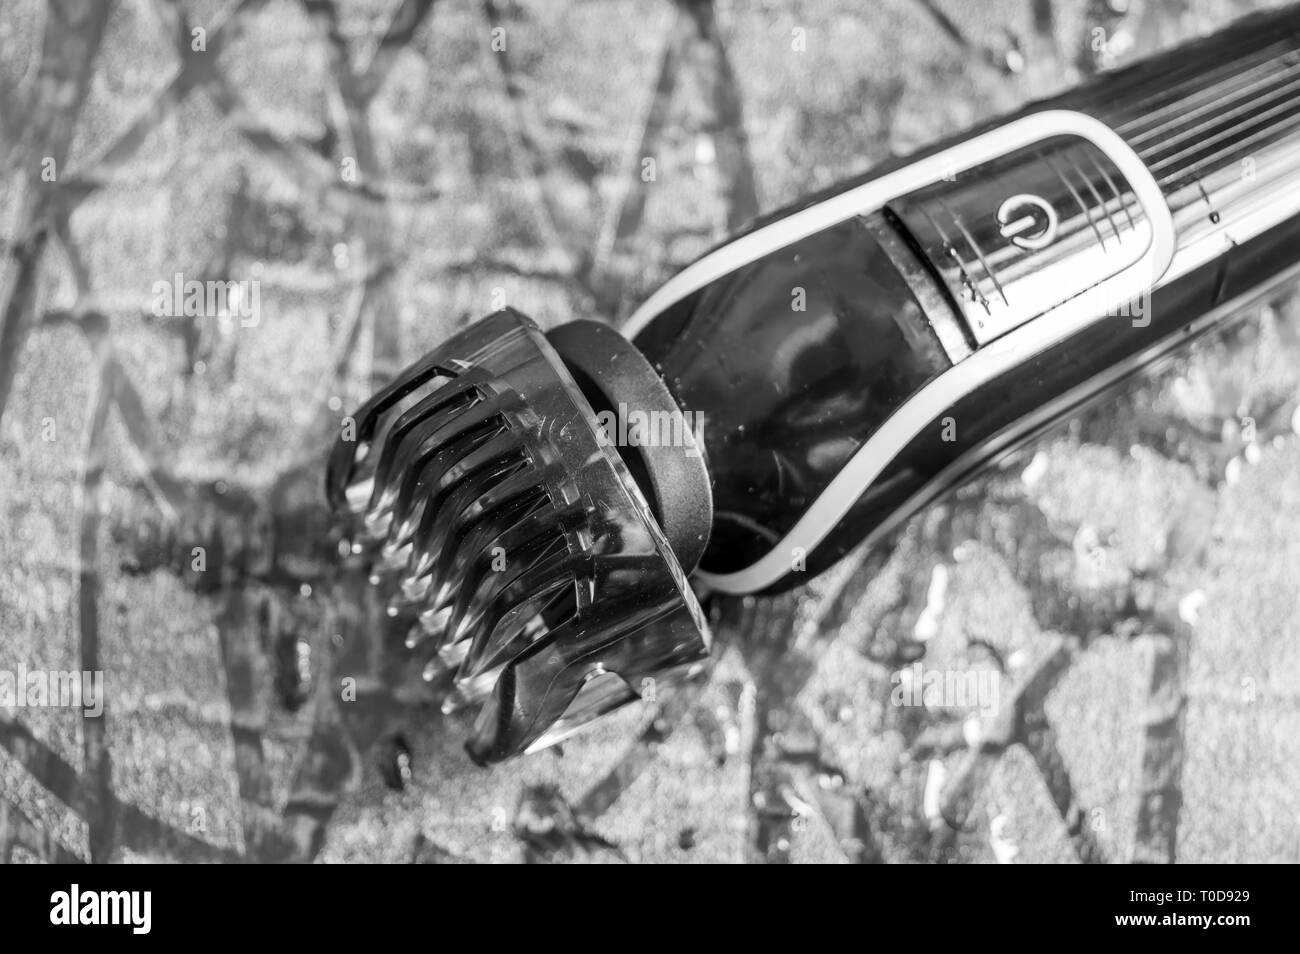 Elektrischer Rasierapparat des Menschen oder Fräser mit einer Einstellung Blade comb gehalten auf einer nassen Boden Stockfoto